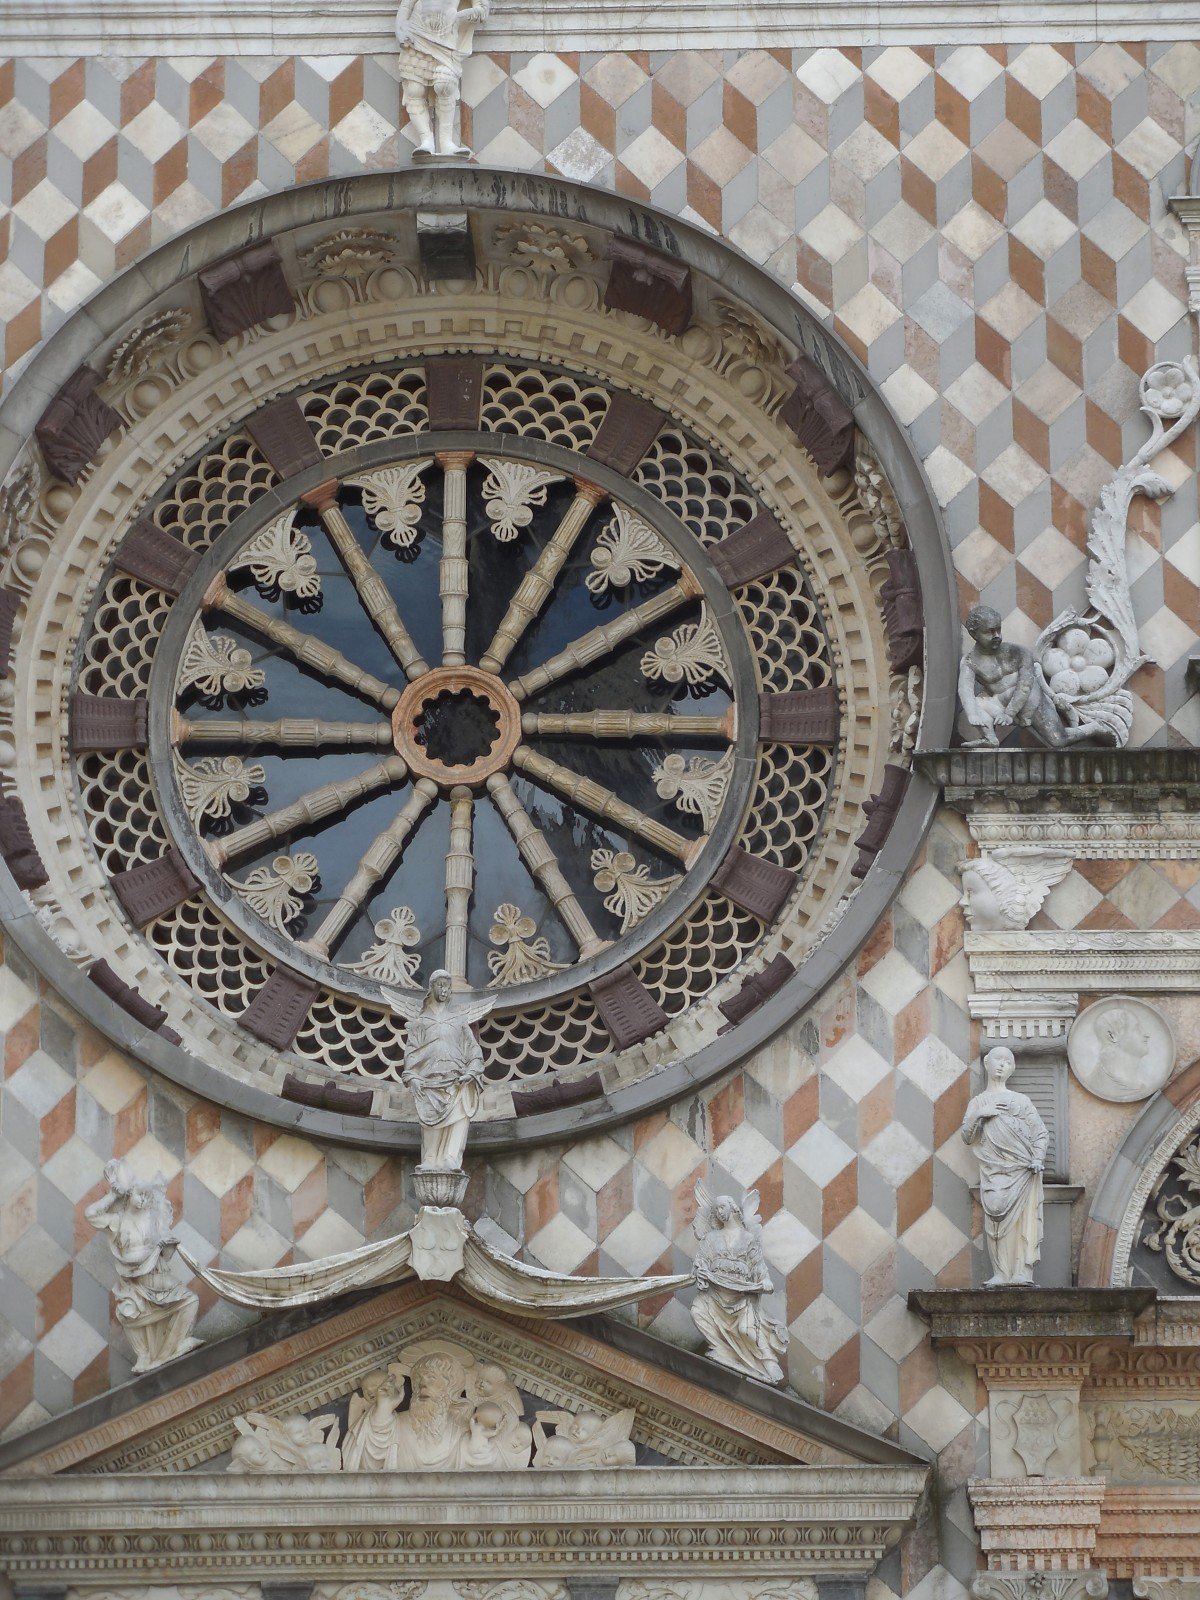 Bergamo, Basilica di Santa Maria Maggiore, detail of the facade